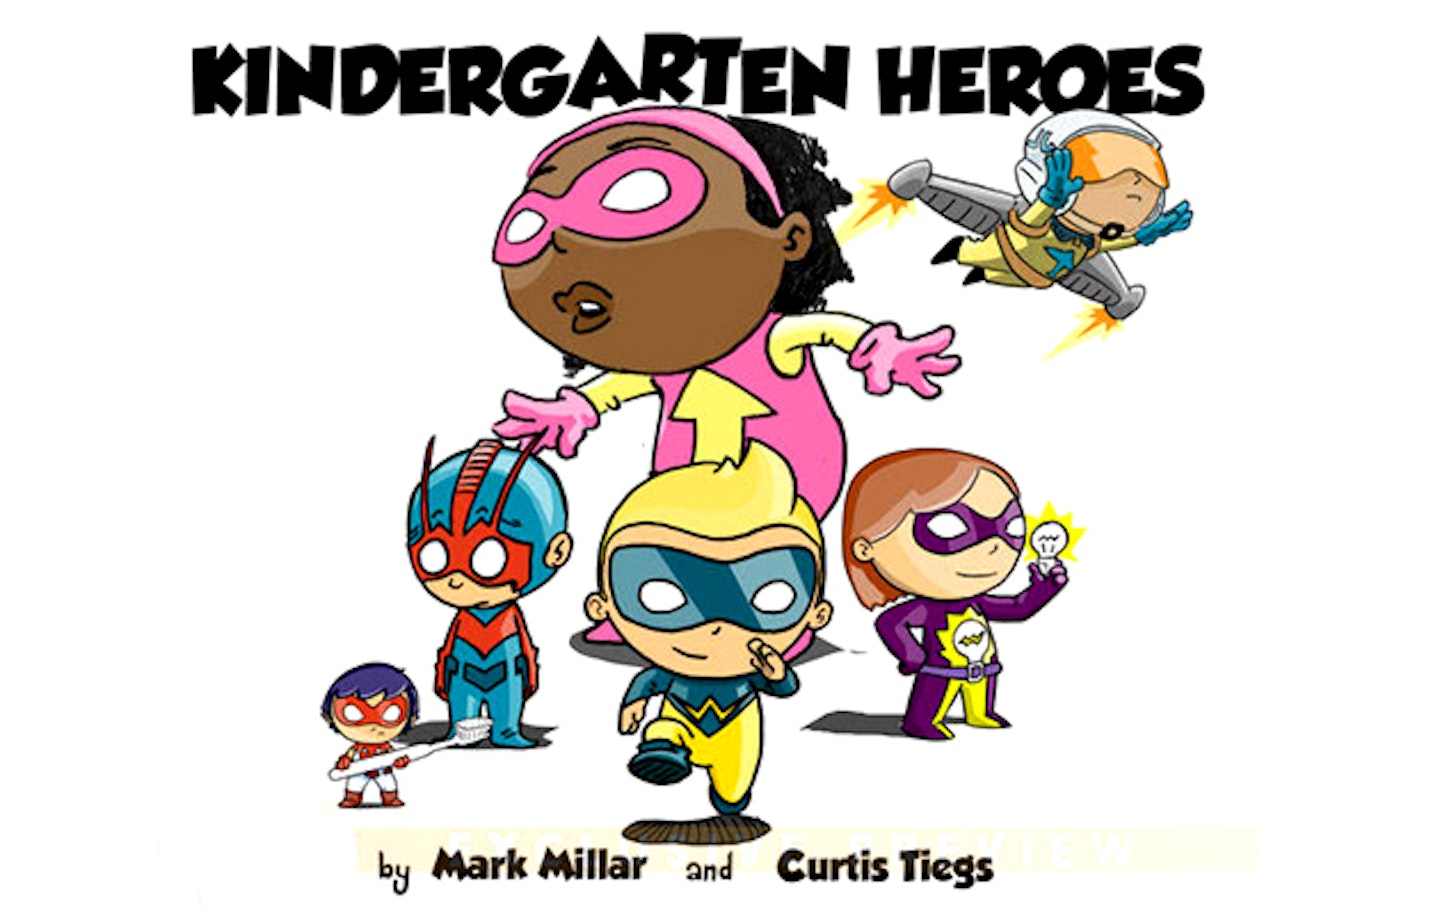 Mark Millar's Kindergarten Heroes